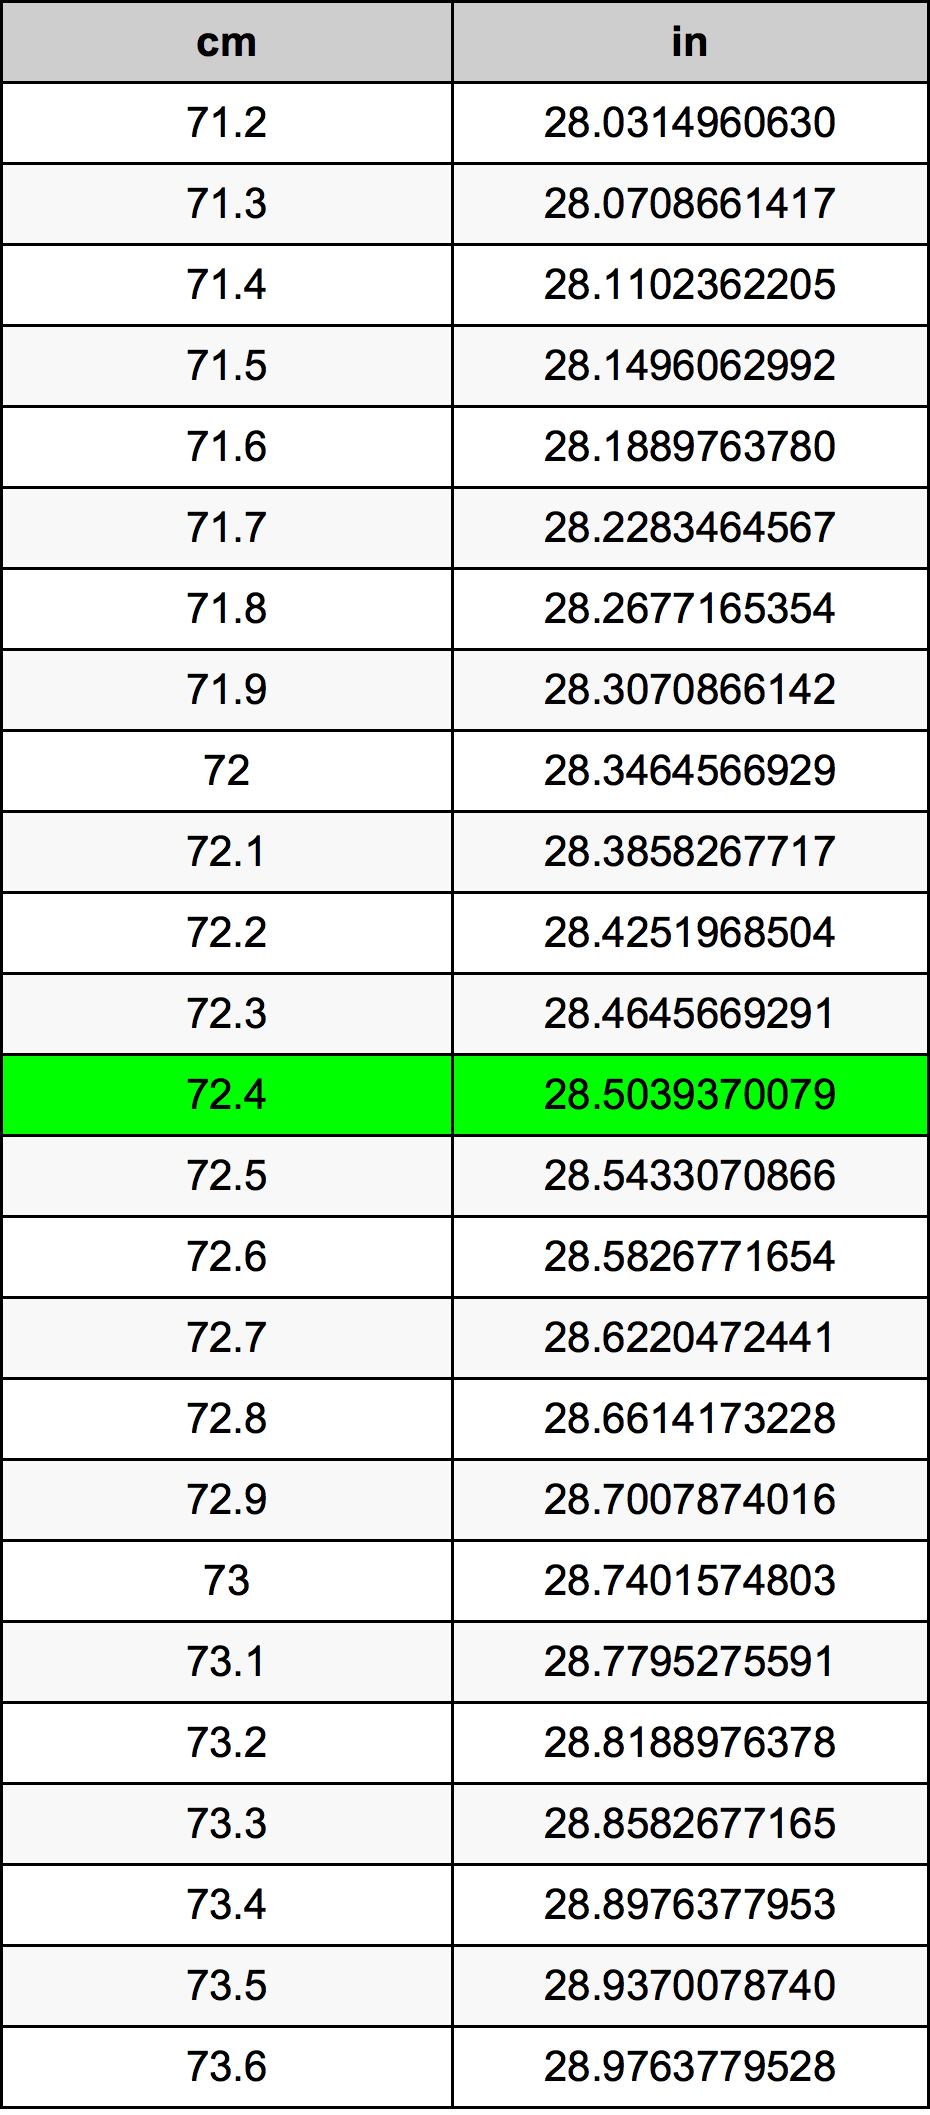 72.4 Centiméter átszámítási táblázat